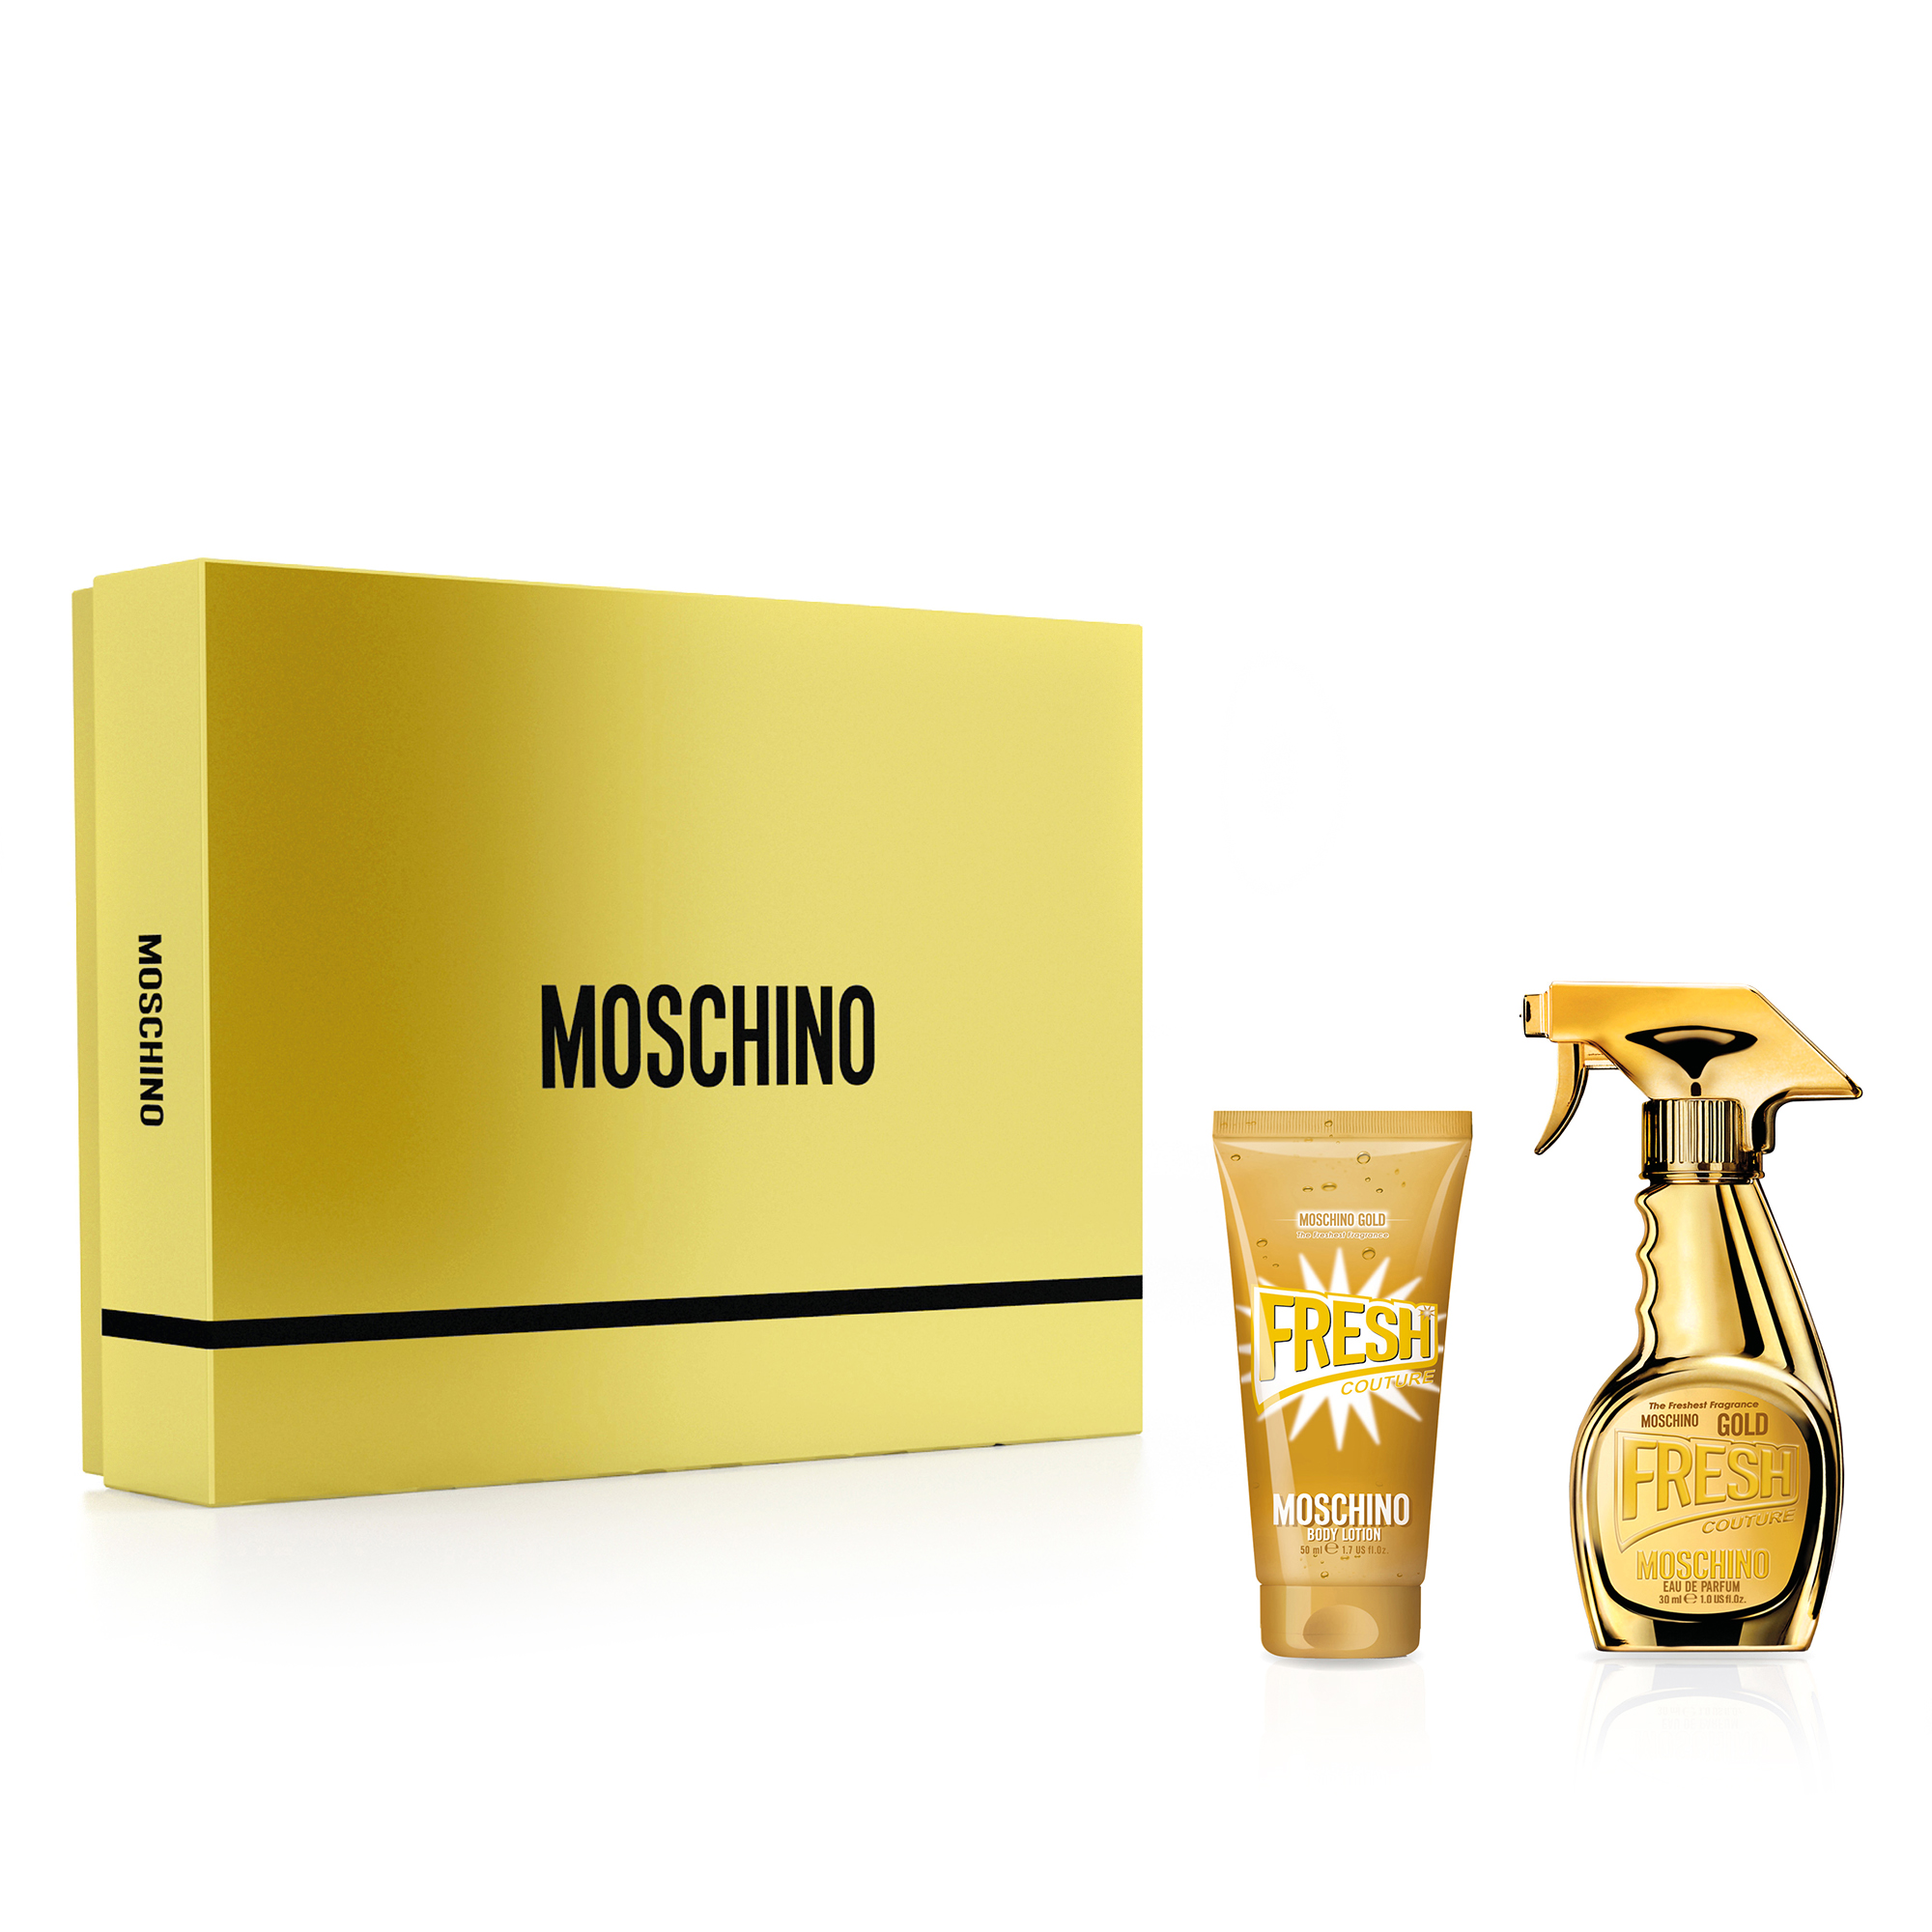 Moschino Fresh Gold EDP 30ml Gift Set 2020